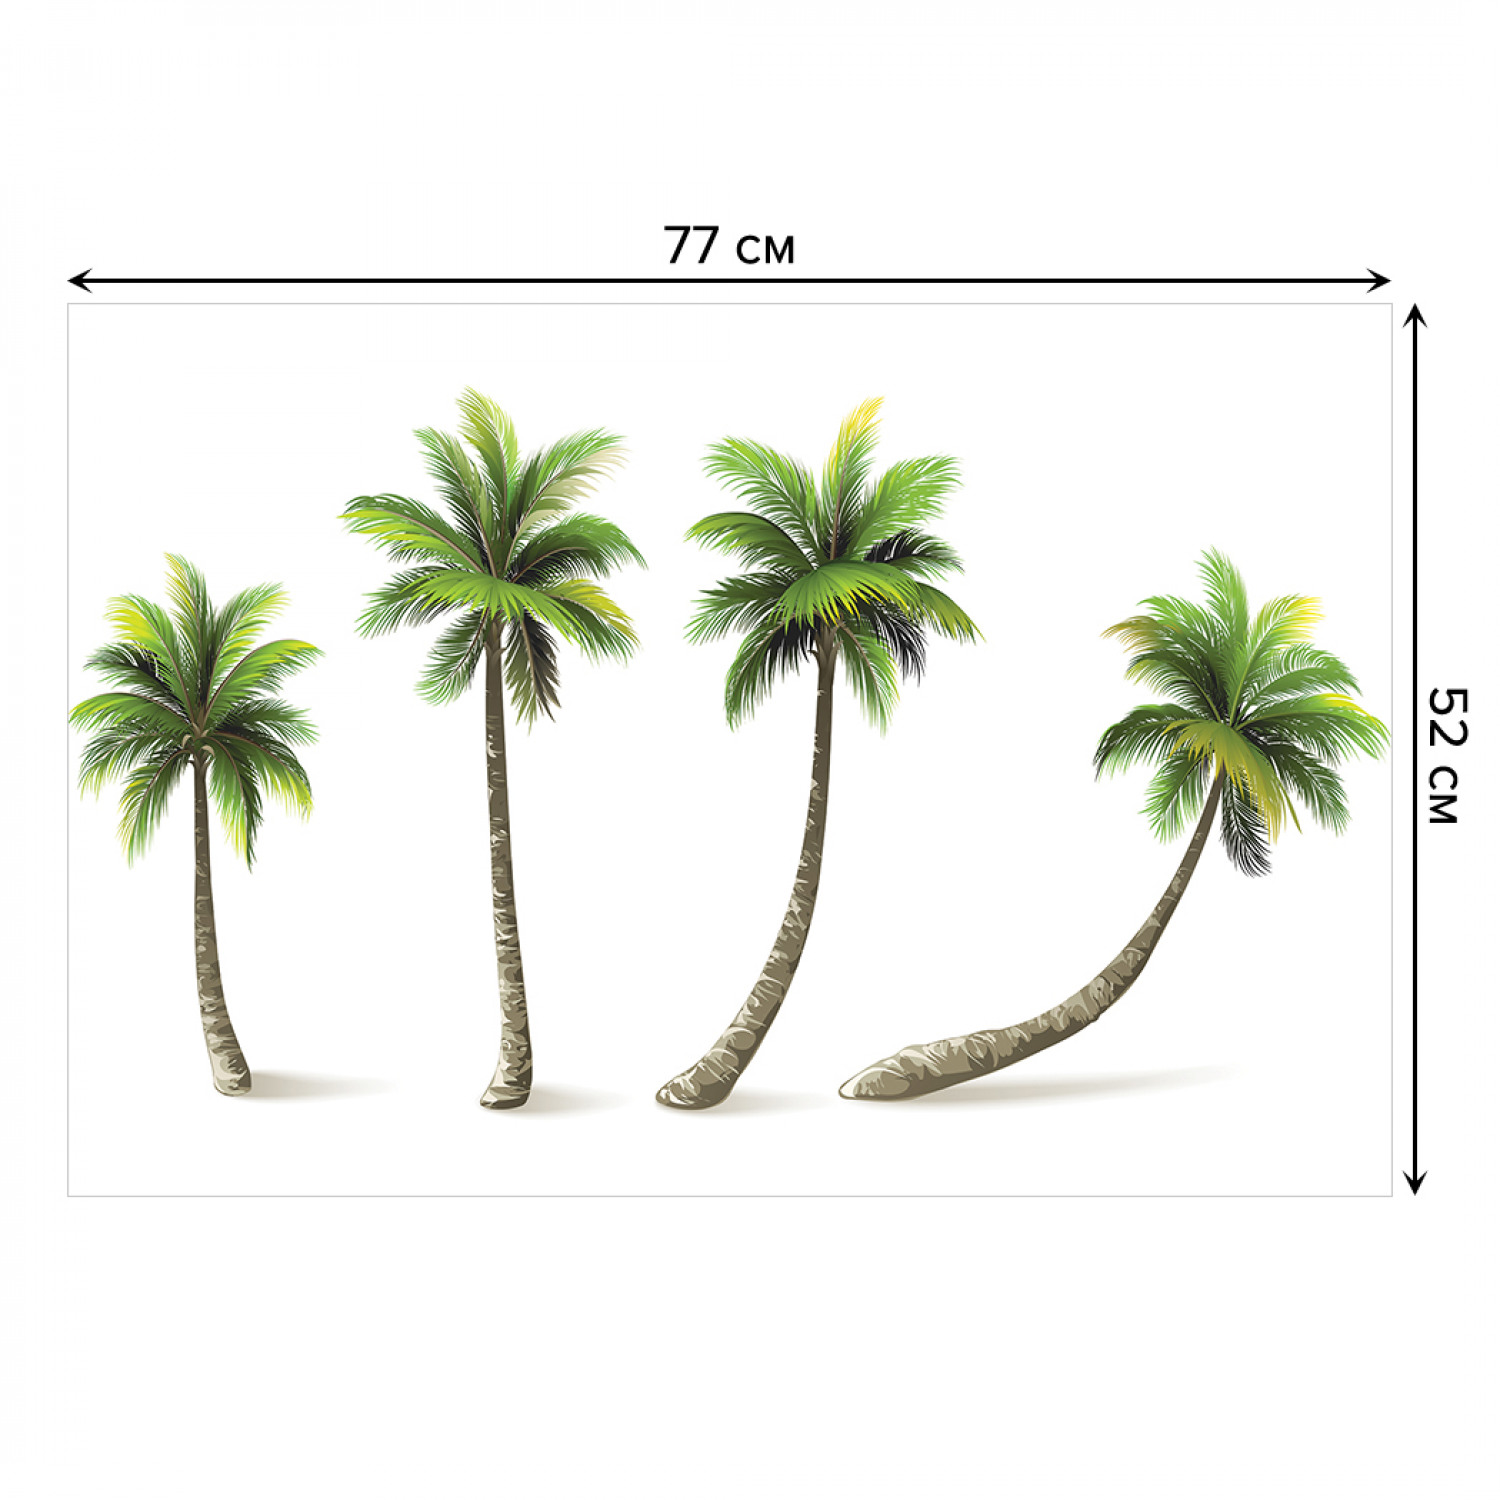 Palma 4 отзывы. Чилийская Пальма 4 буквы. Две пальмы 4 строфы. Пальма с 4 юношами. Зачем у пальмы четыре шеста.